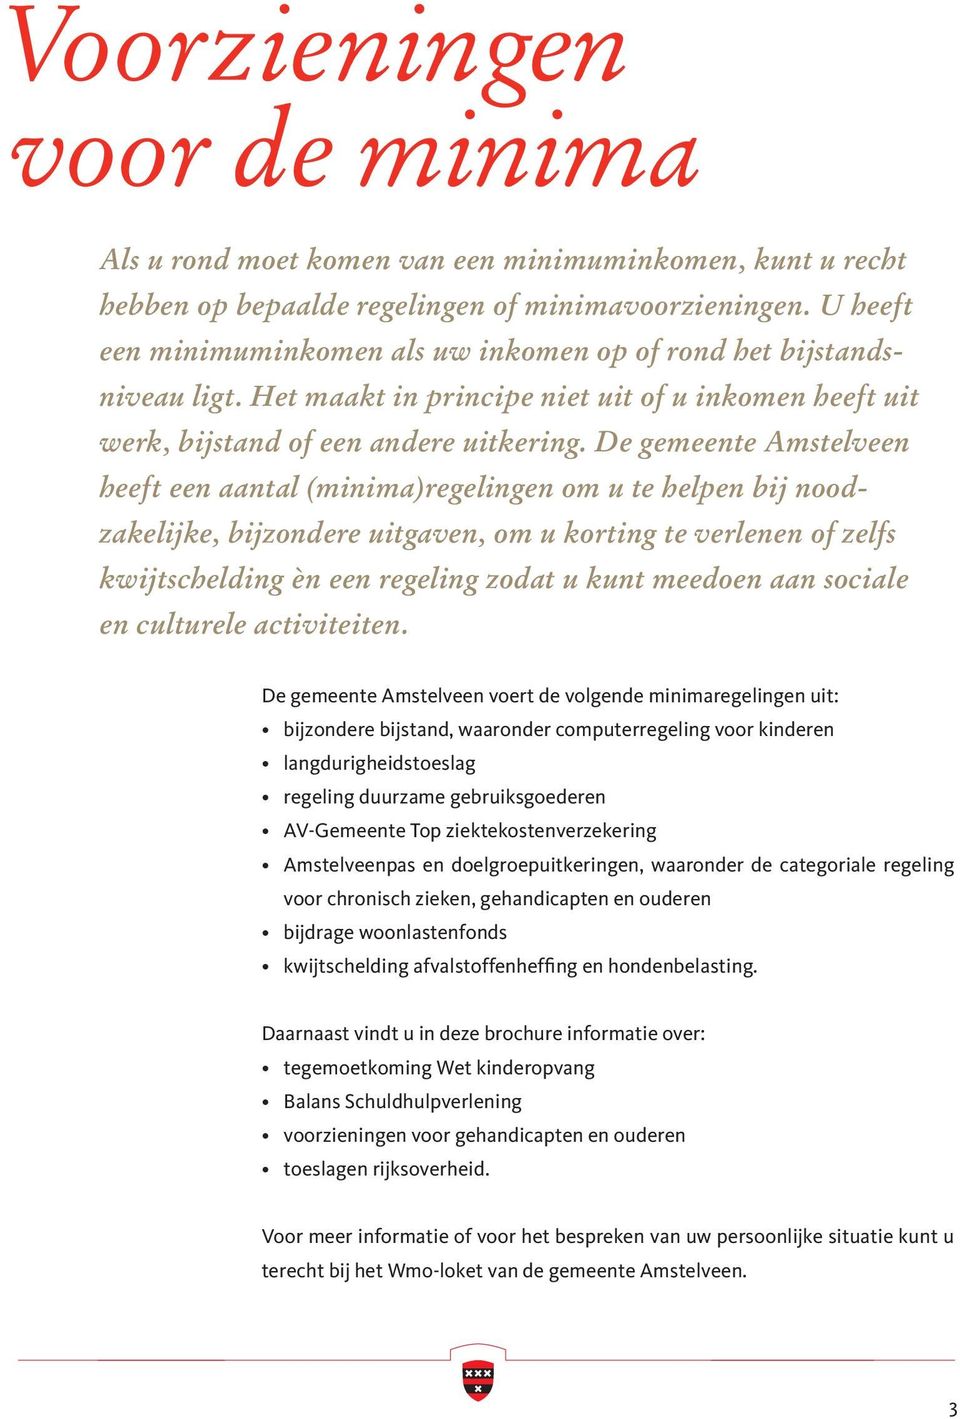 De gemeente Amstelveen heeft een aantal (minima)regelingen om u te helpen bij noodzakelijke, bijzondere uitgaven, om u korting te verlenen of zelfs kwijtschelding èn een regeling zodat u kunt meedoen